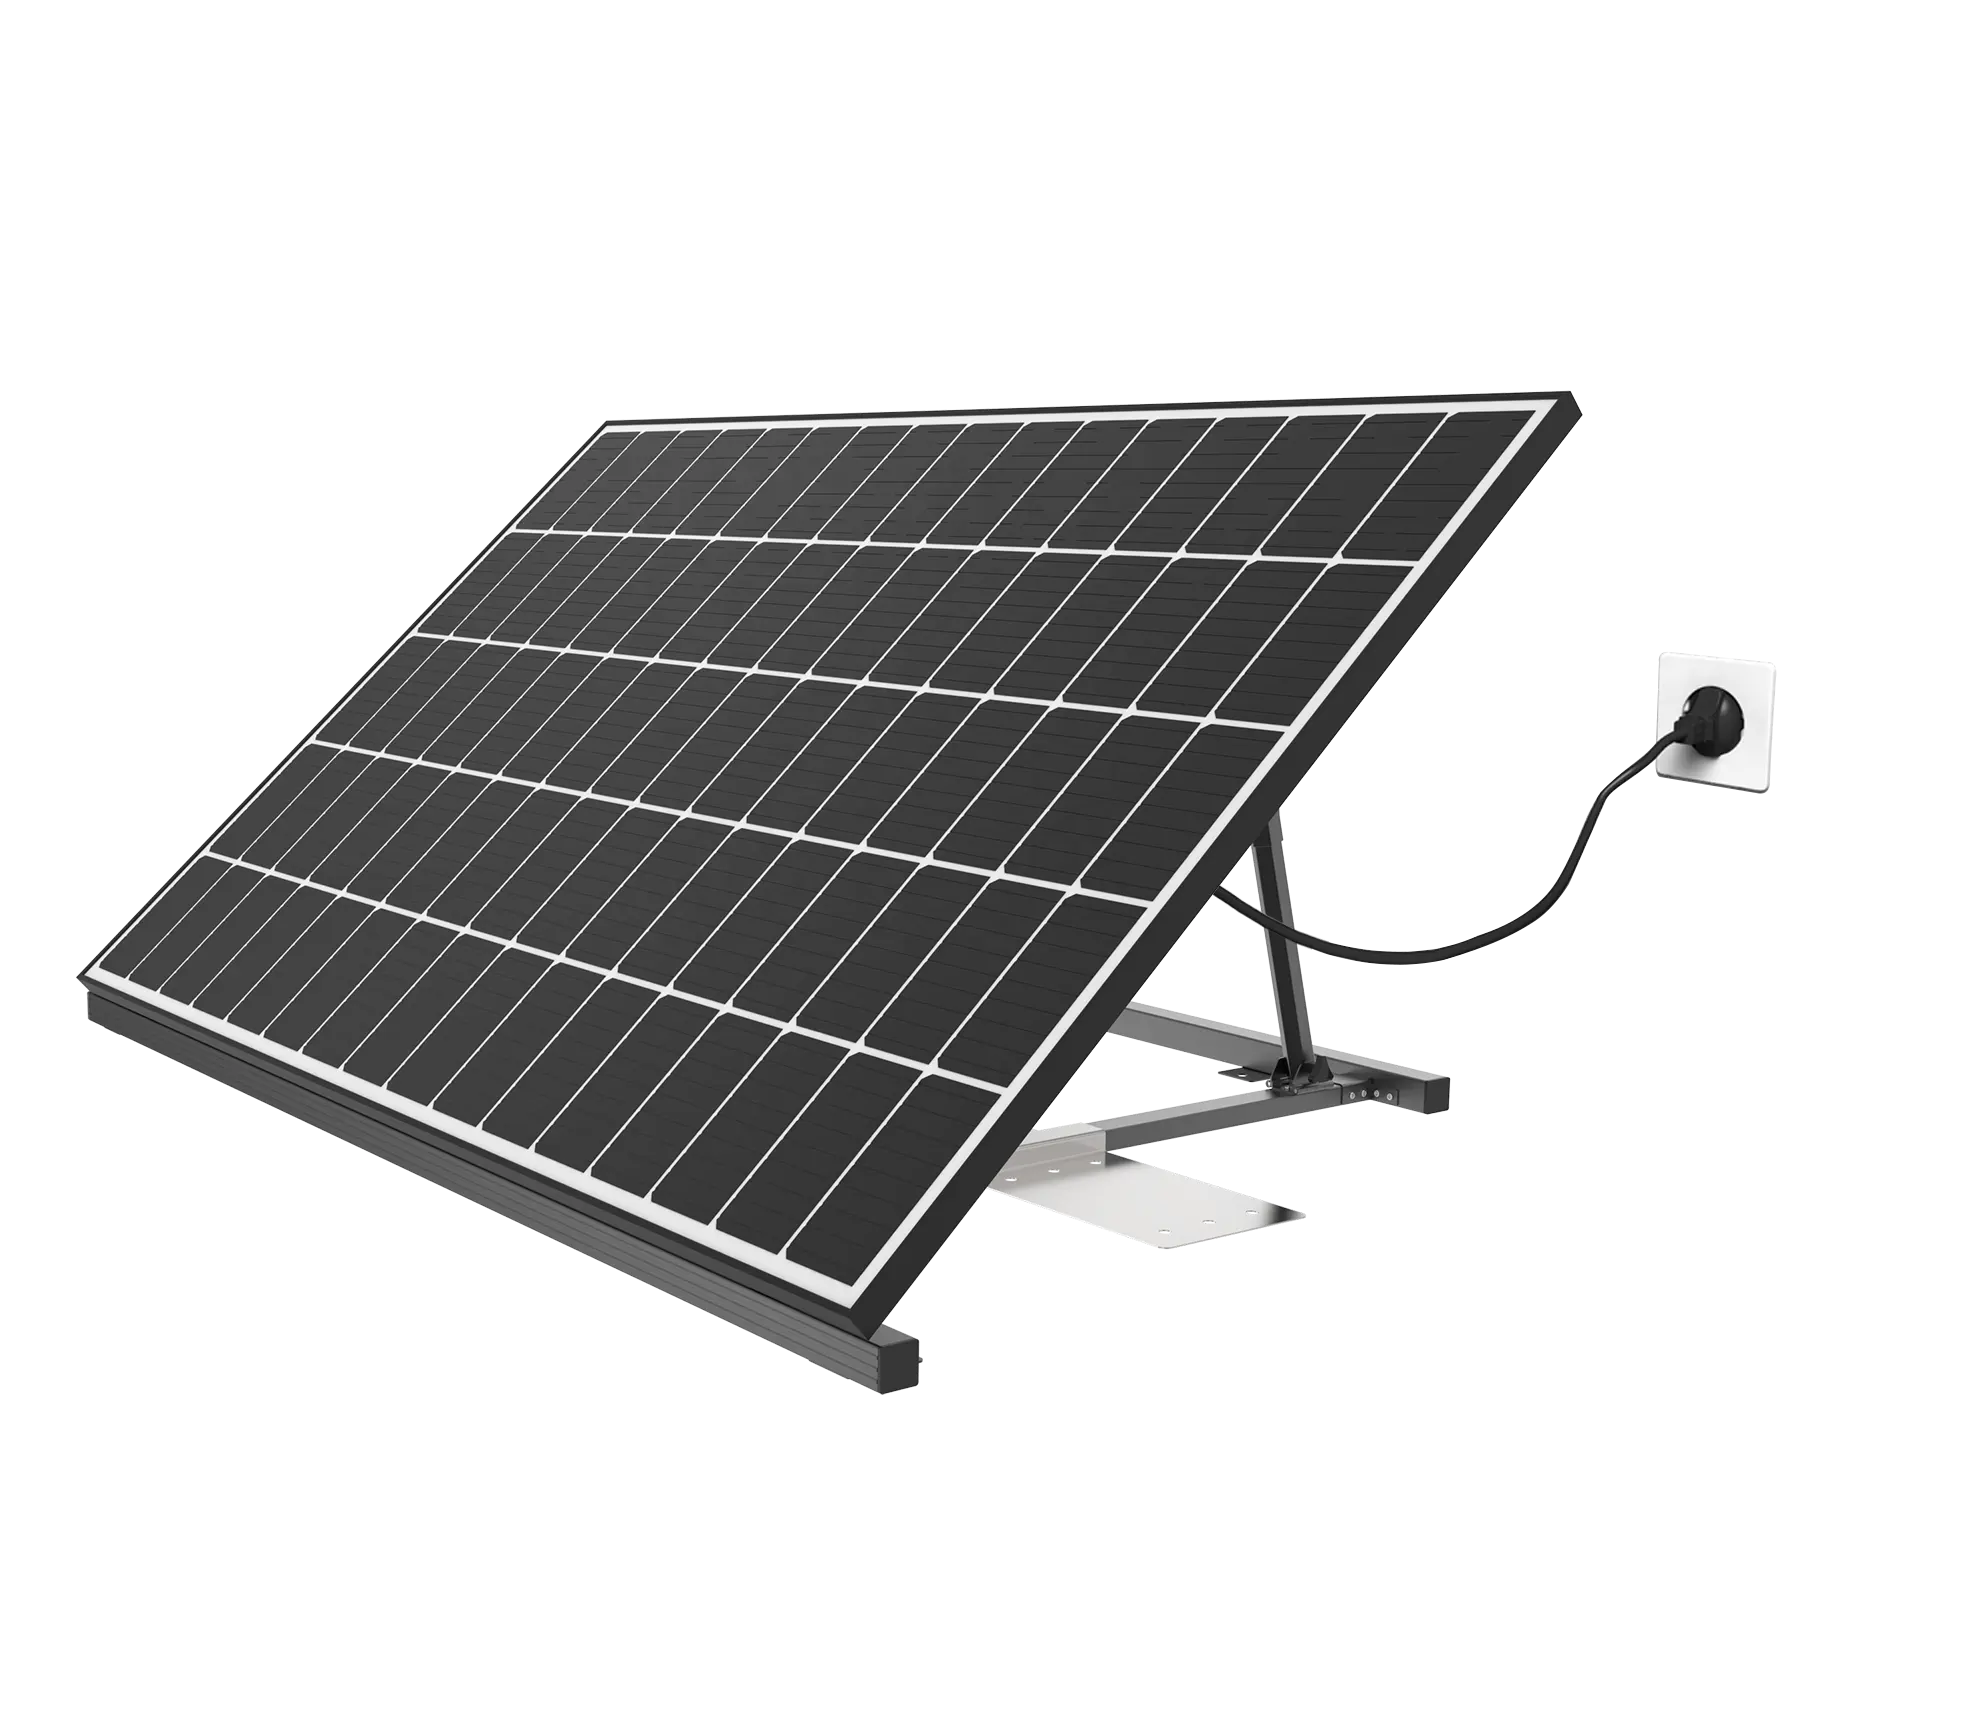 Hipoweress năng lượng mặt trời dây chuyền sản xuất-sắp xếp hợp lý sản xuất cho màu xanh lá cây năng lượng trên Lưới cắm và chơi năng lượng mặt trời hệ thống